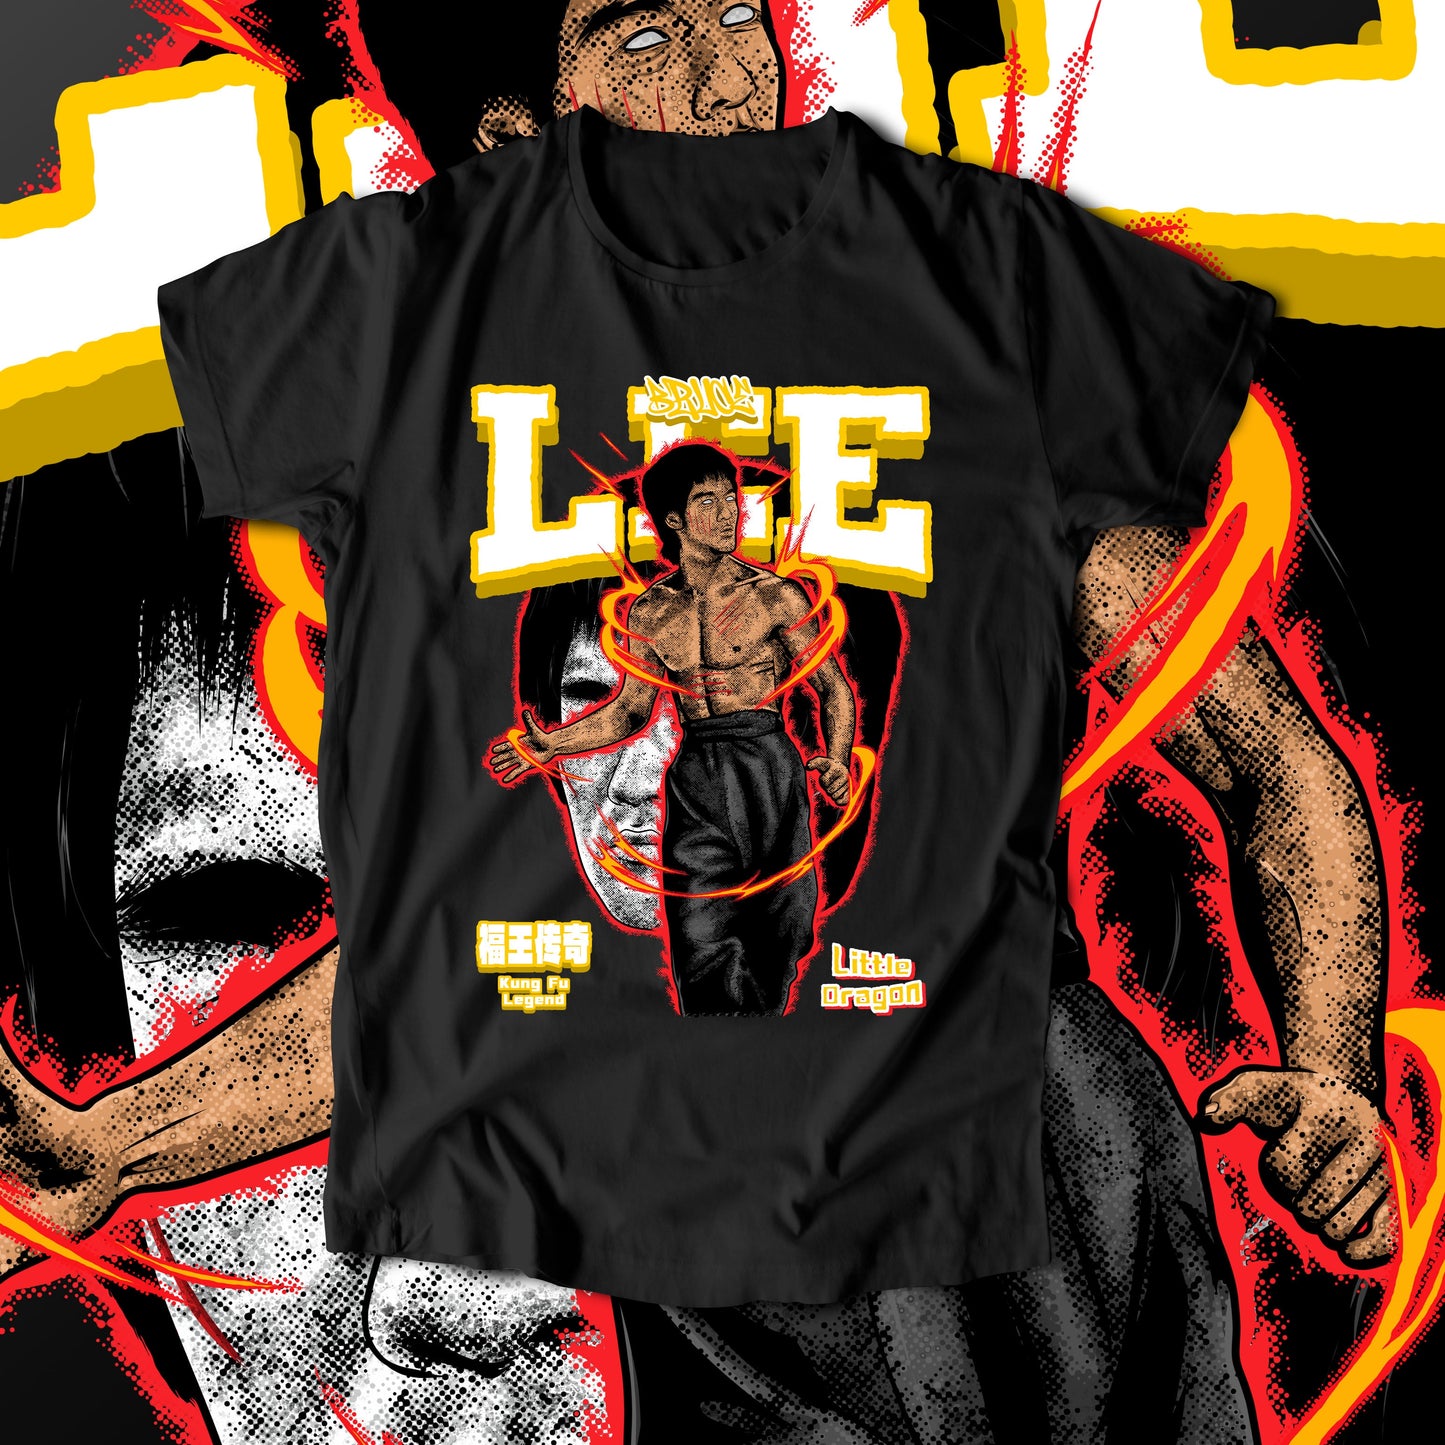 Bruce Lee - I'm Like That (T-Shirt)